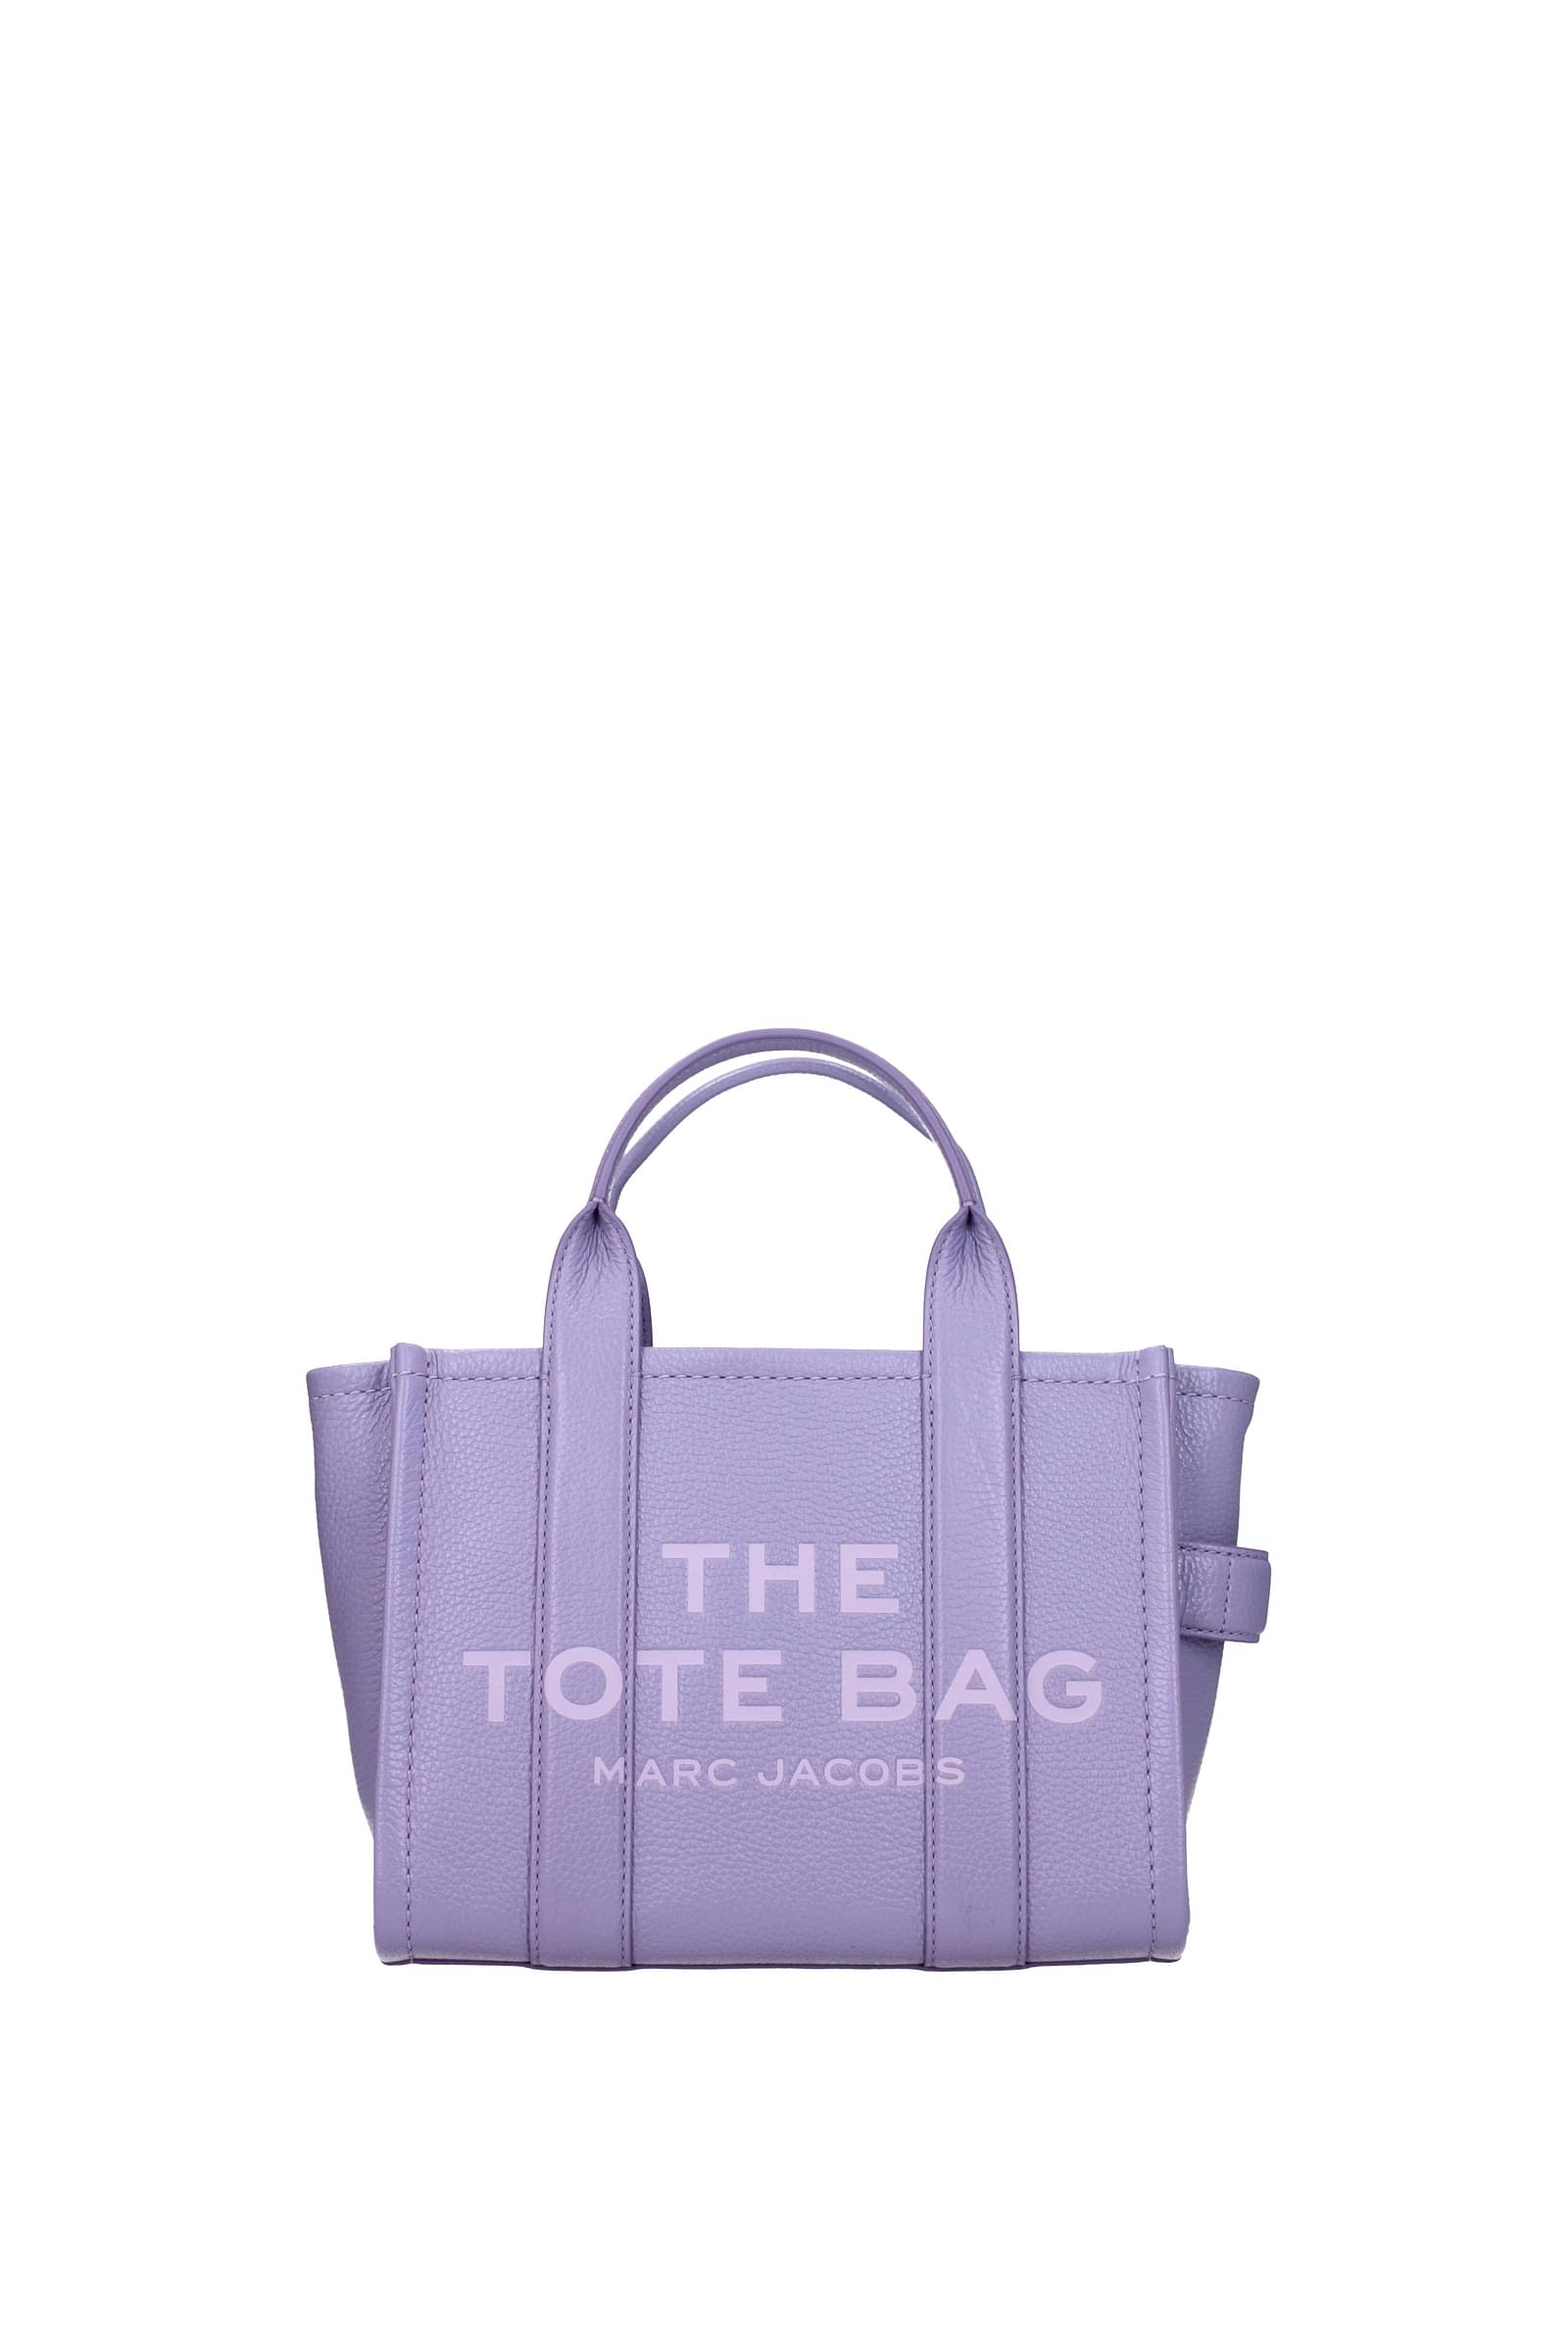 Marc Jacobs Handbags the tote bag Women M0016493481 Fabric Blue Blue Shadow  156€